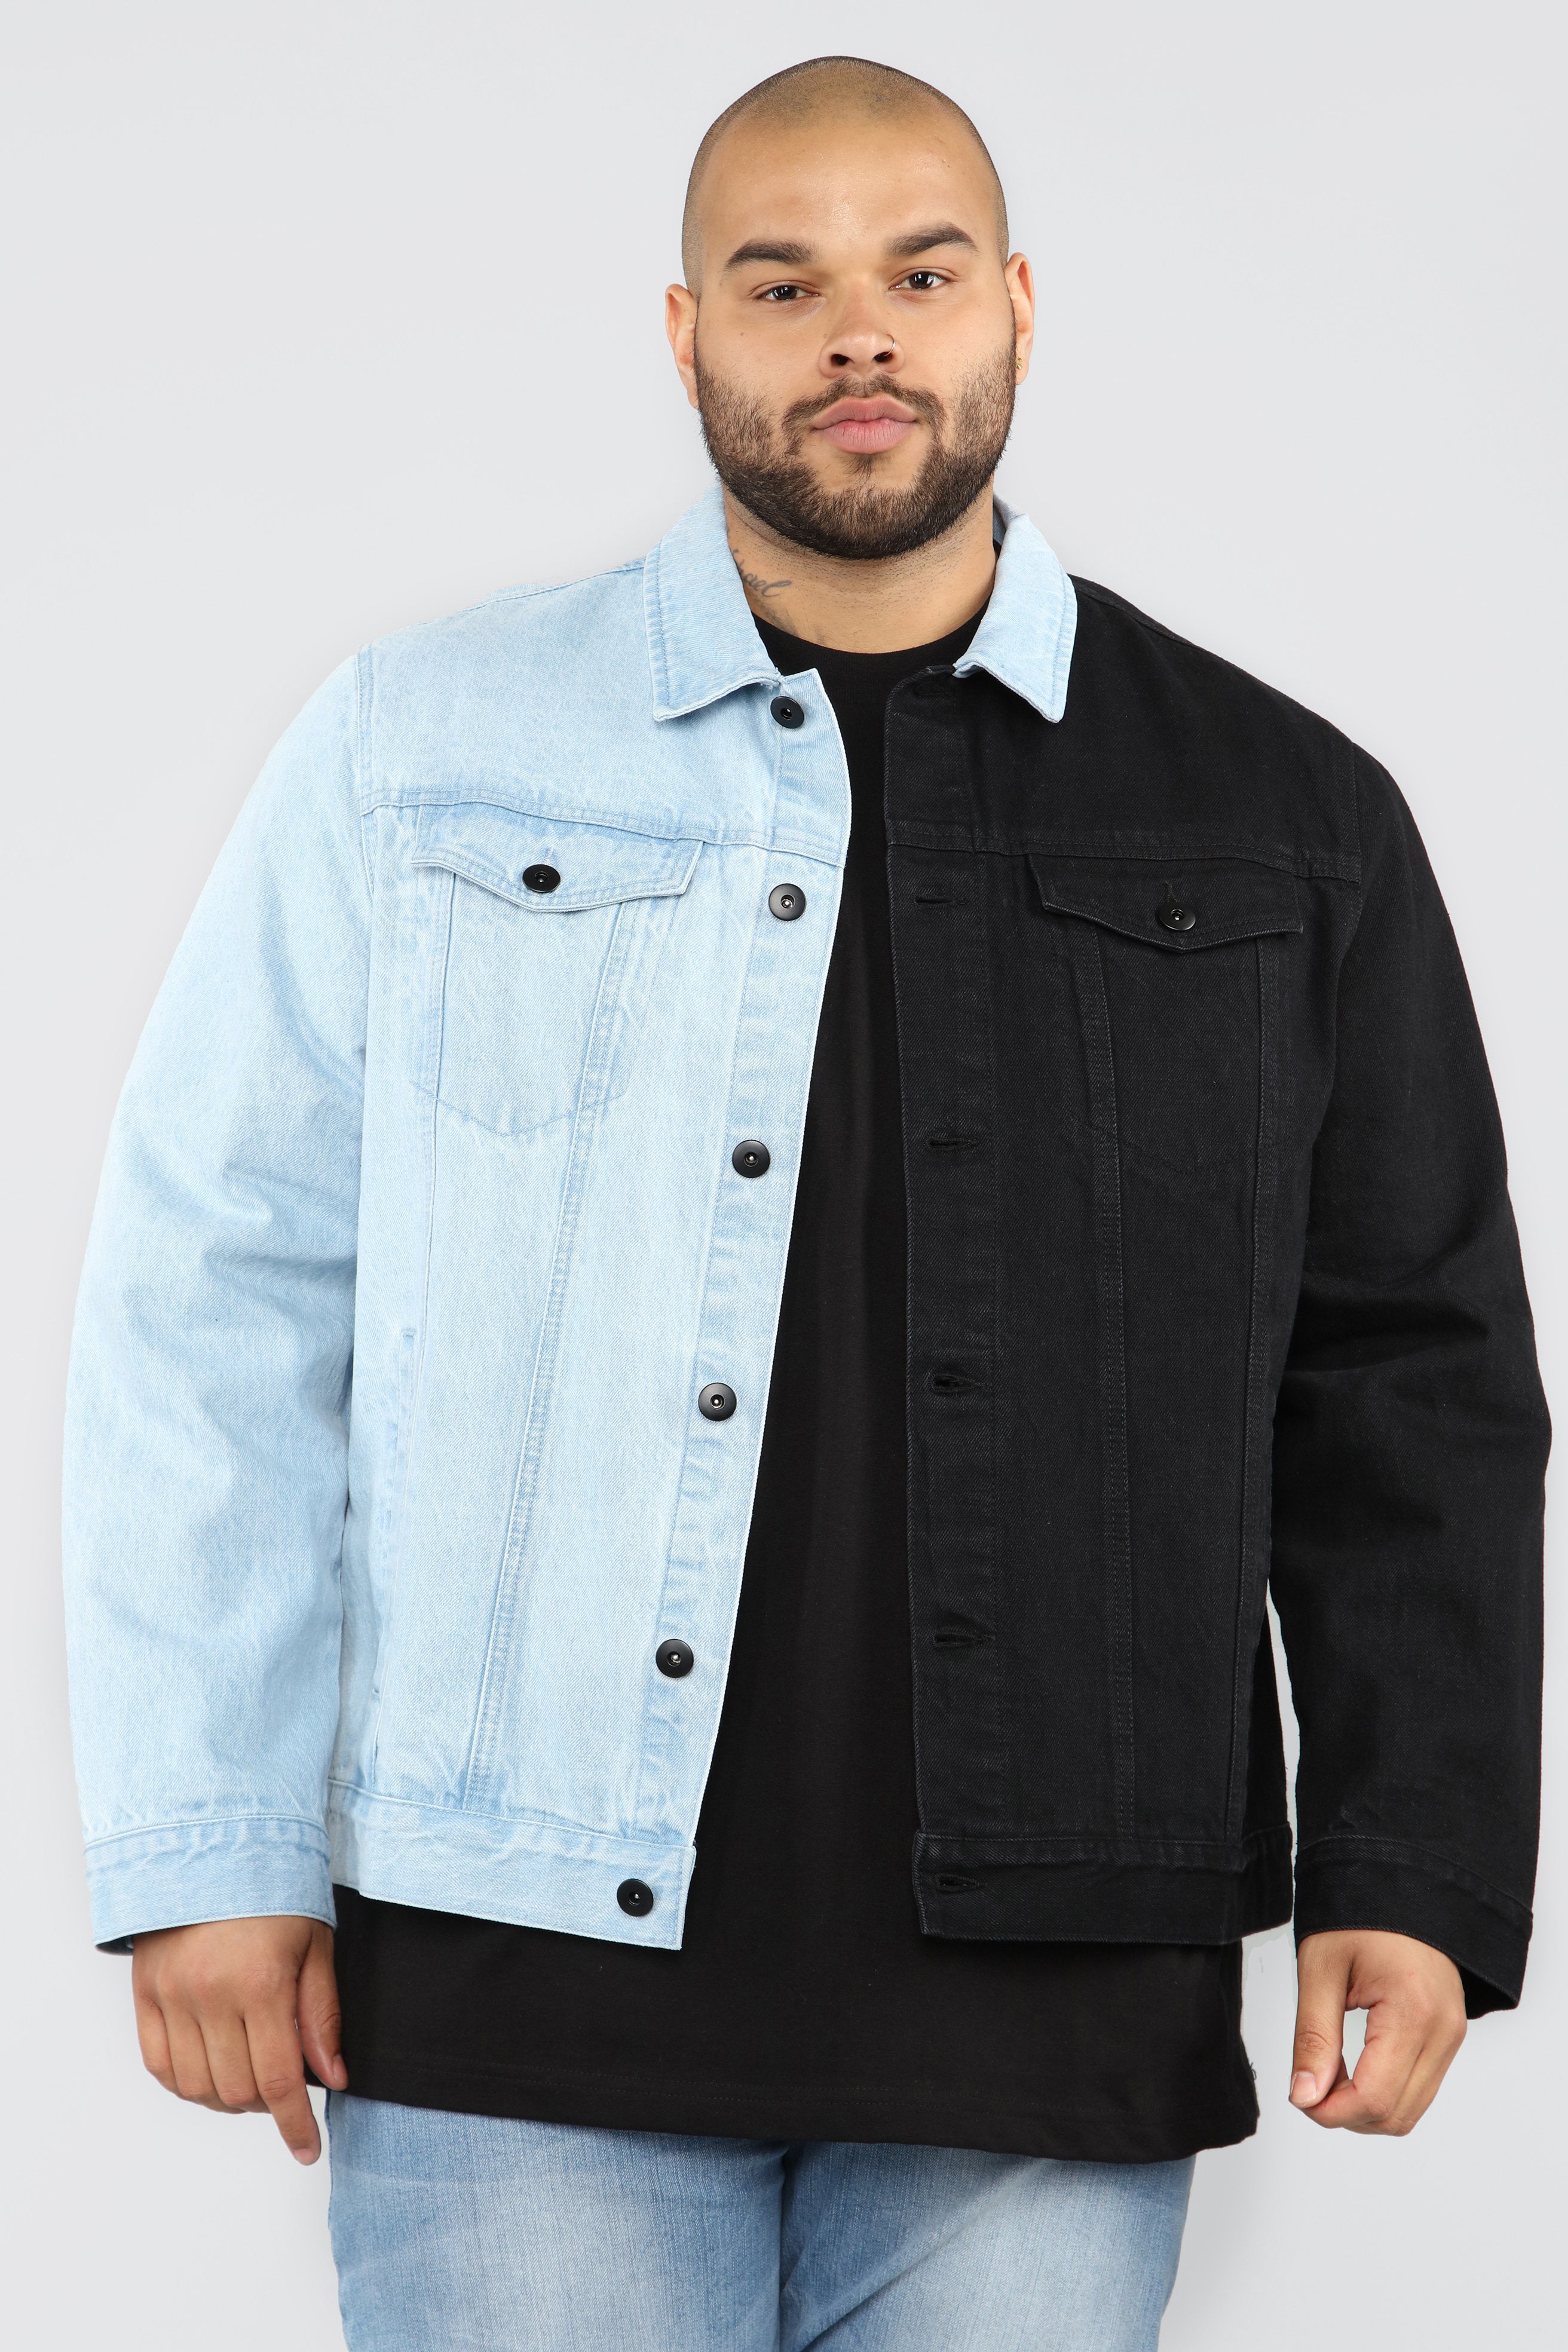 2 tone jean jacket